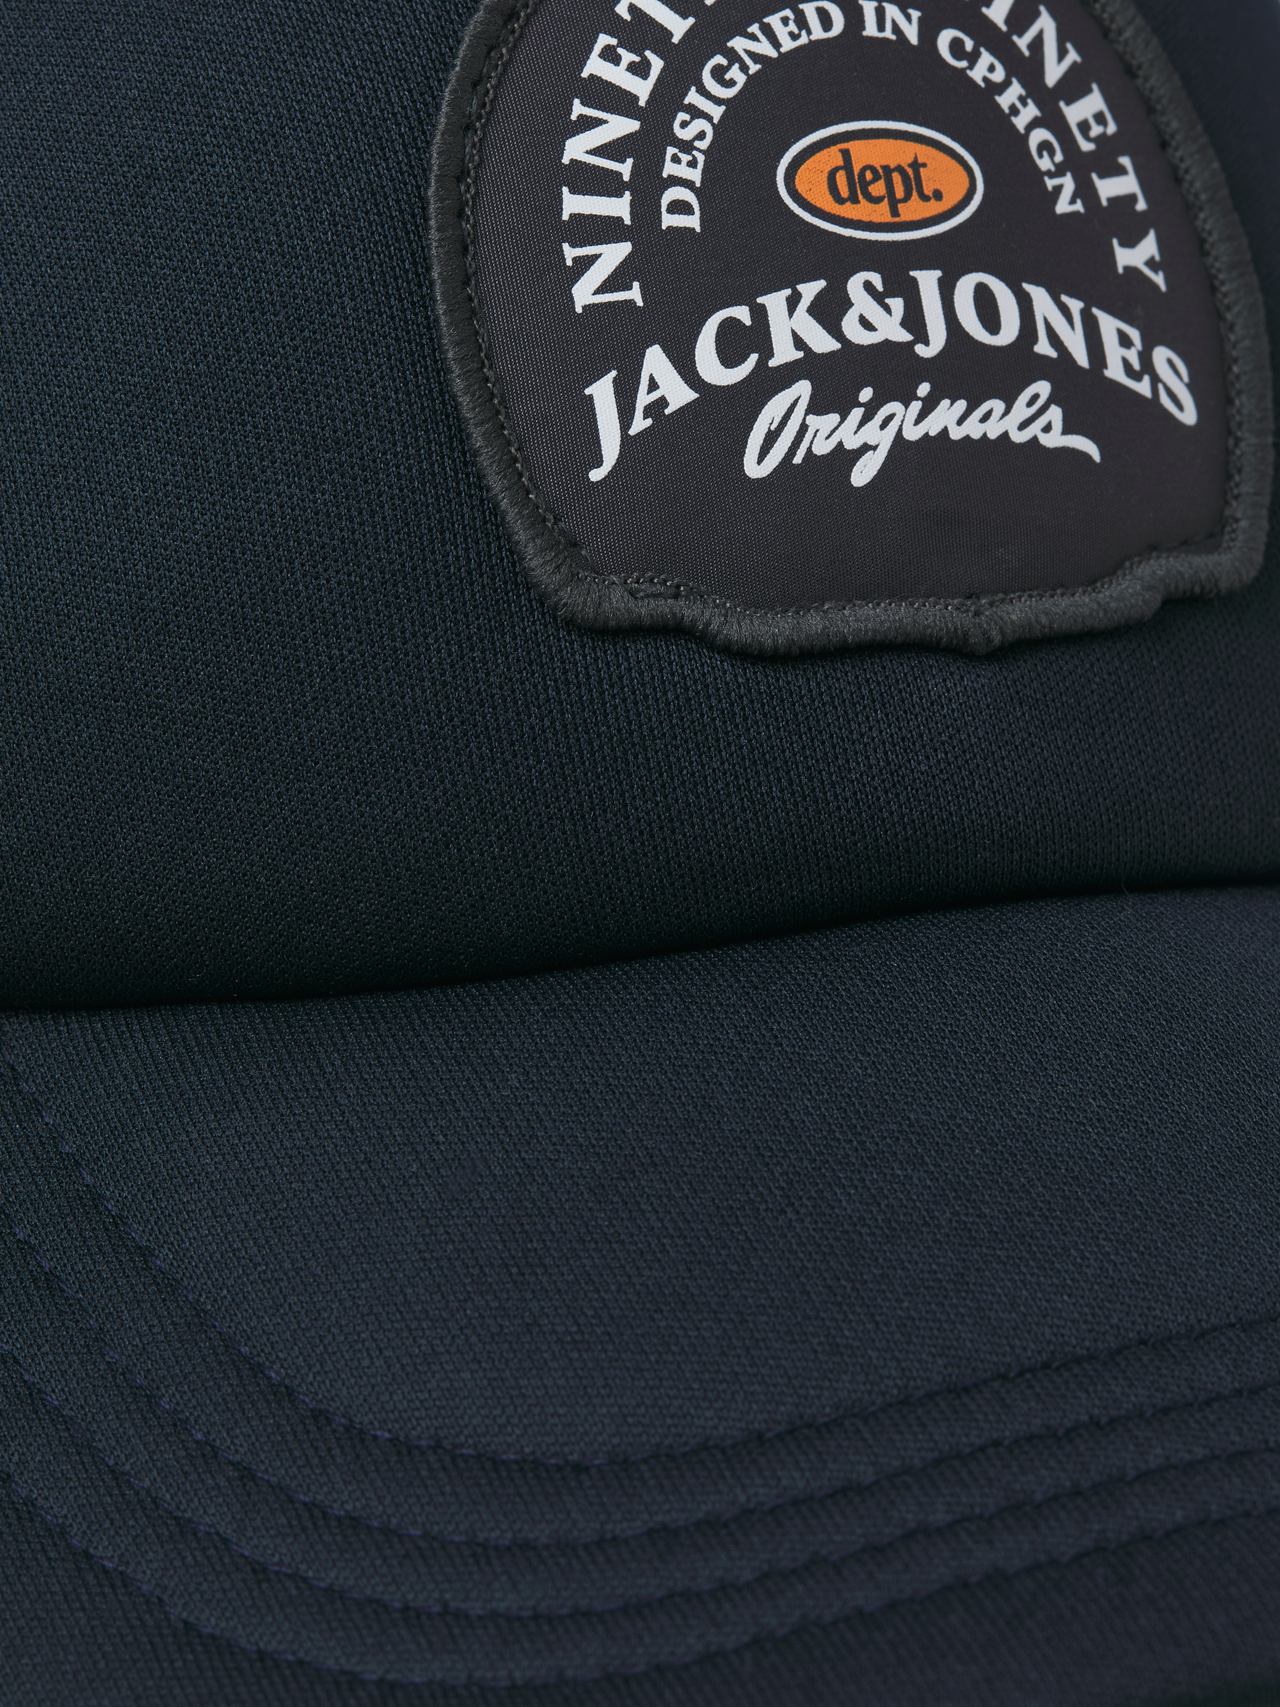 Jack & Jones Baseball cap -Forest River - 12263317